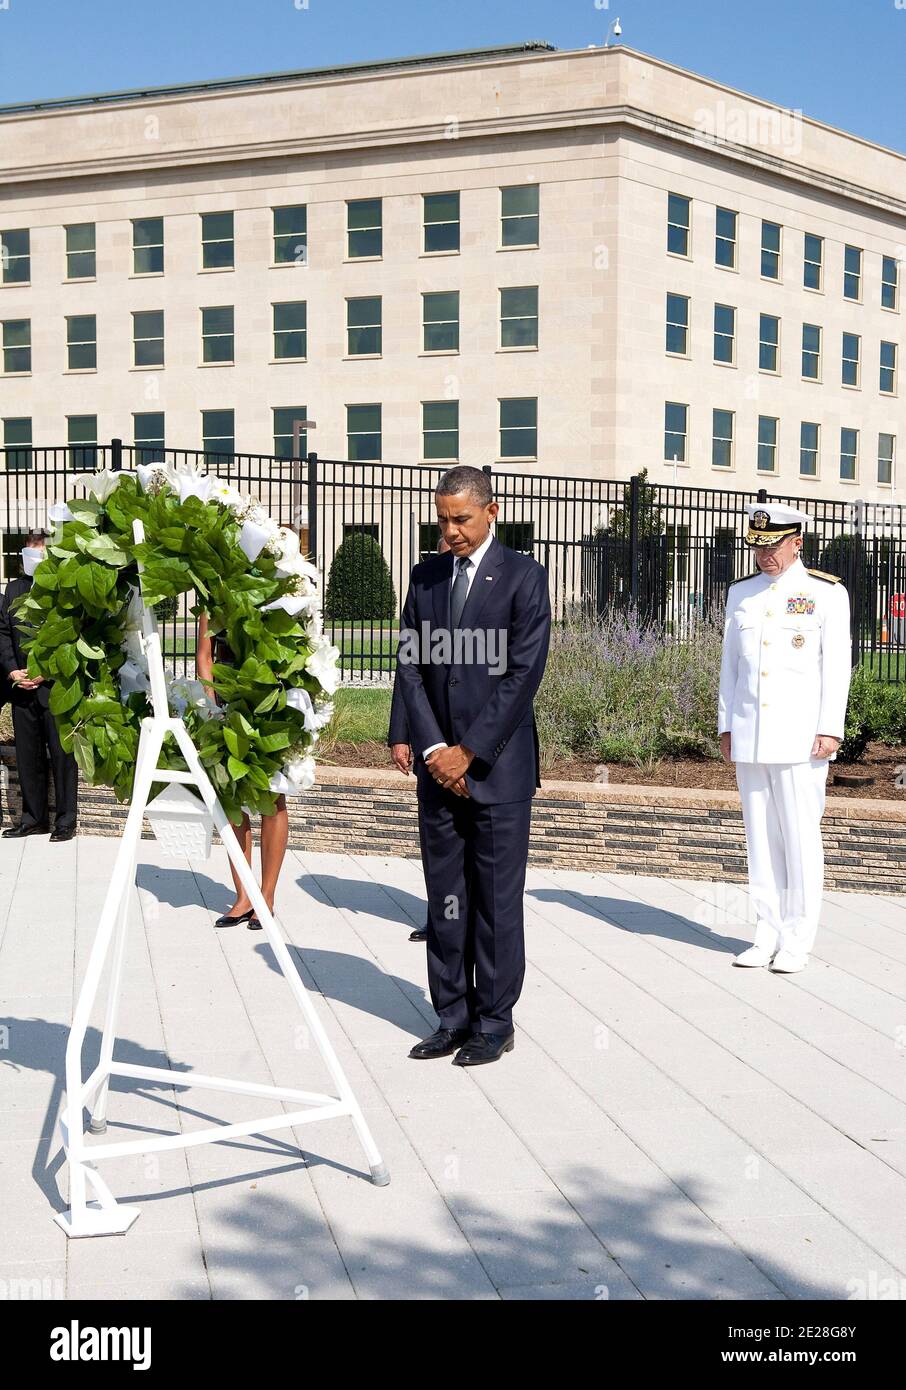 Il presidente degli Stati Uniti Barack Obama depone una corona durante una cerimonia di memoria al Pentagono ad Arlington, VA, USA il 11 settembre 2011. Foto di Joshua Roberts/ABACAPRESS.COM Foto Stock